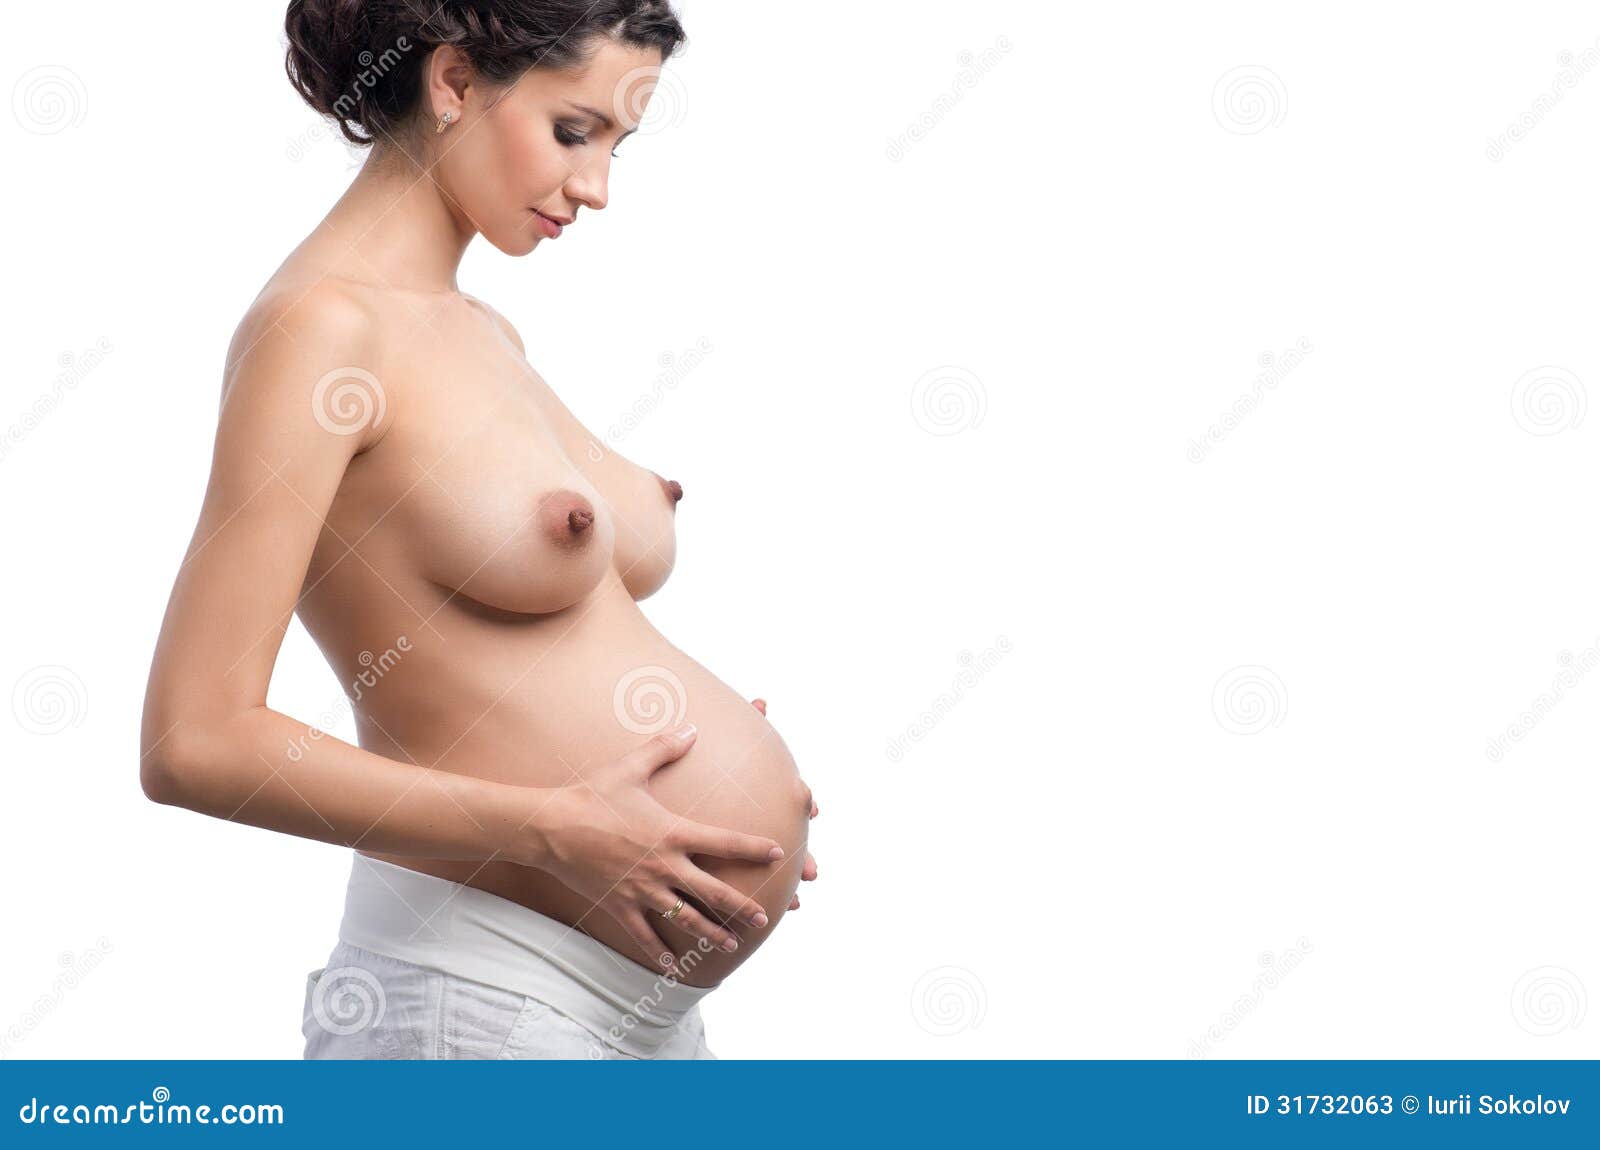 к чему видеть груди беременной фото 3